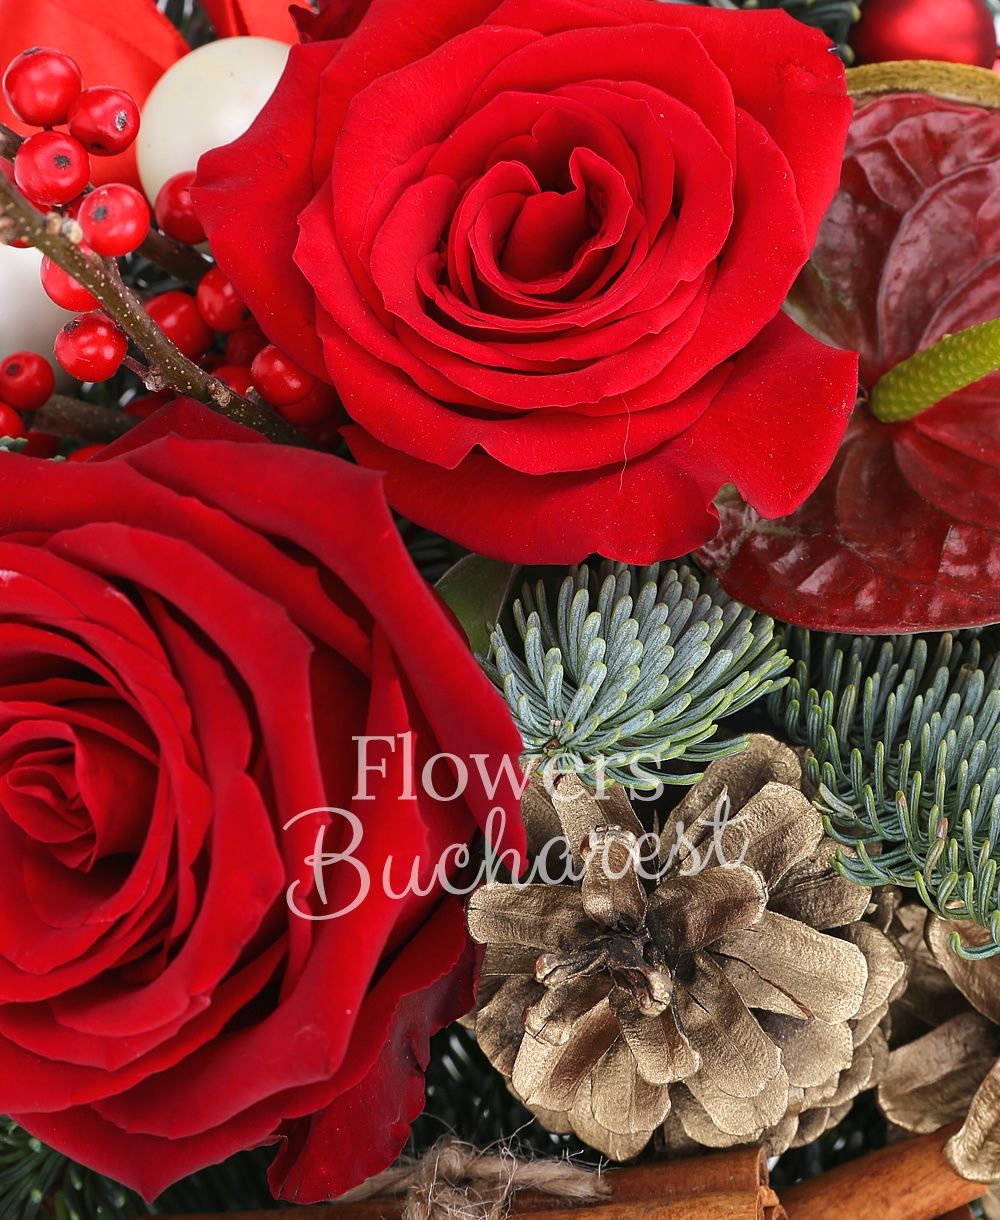 2 red roses, ilex, anthurium, fir, christmas decorations, ceramic vase